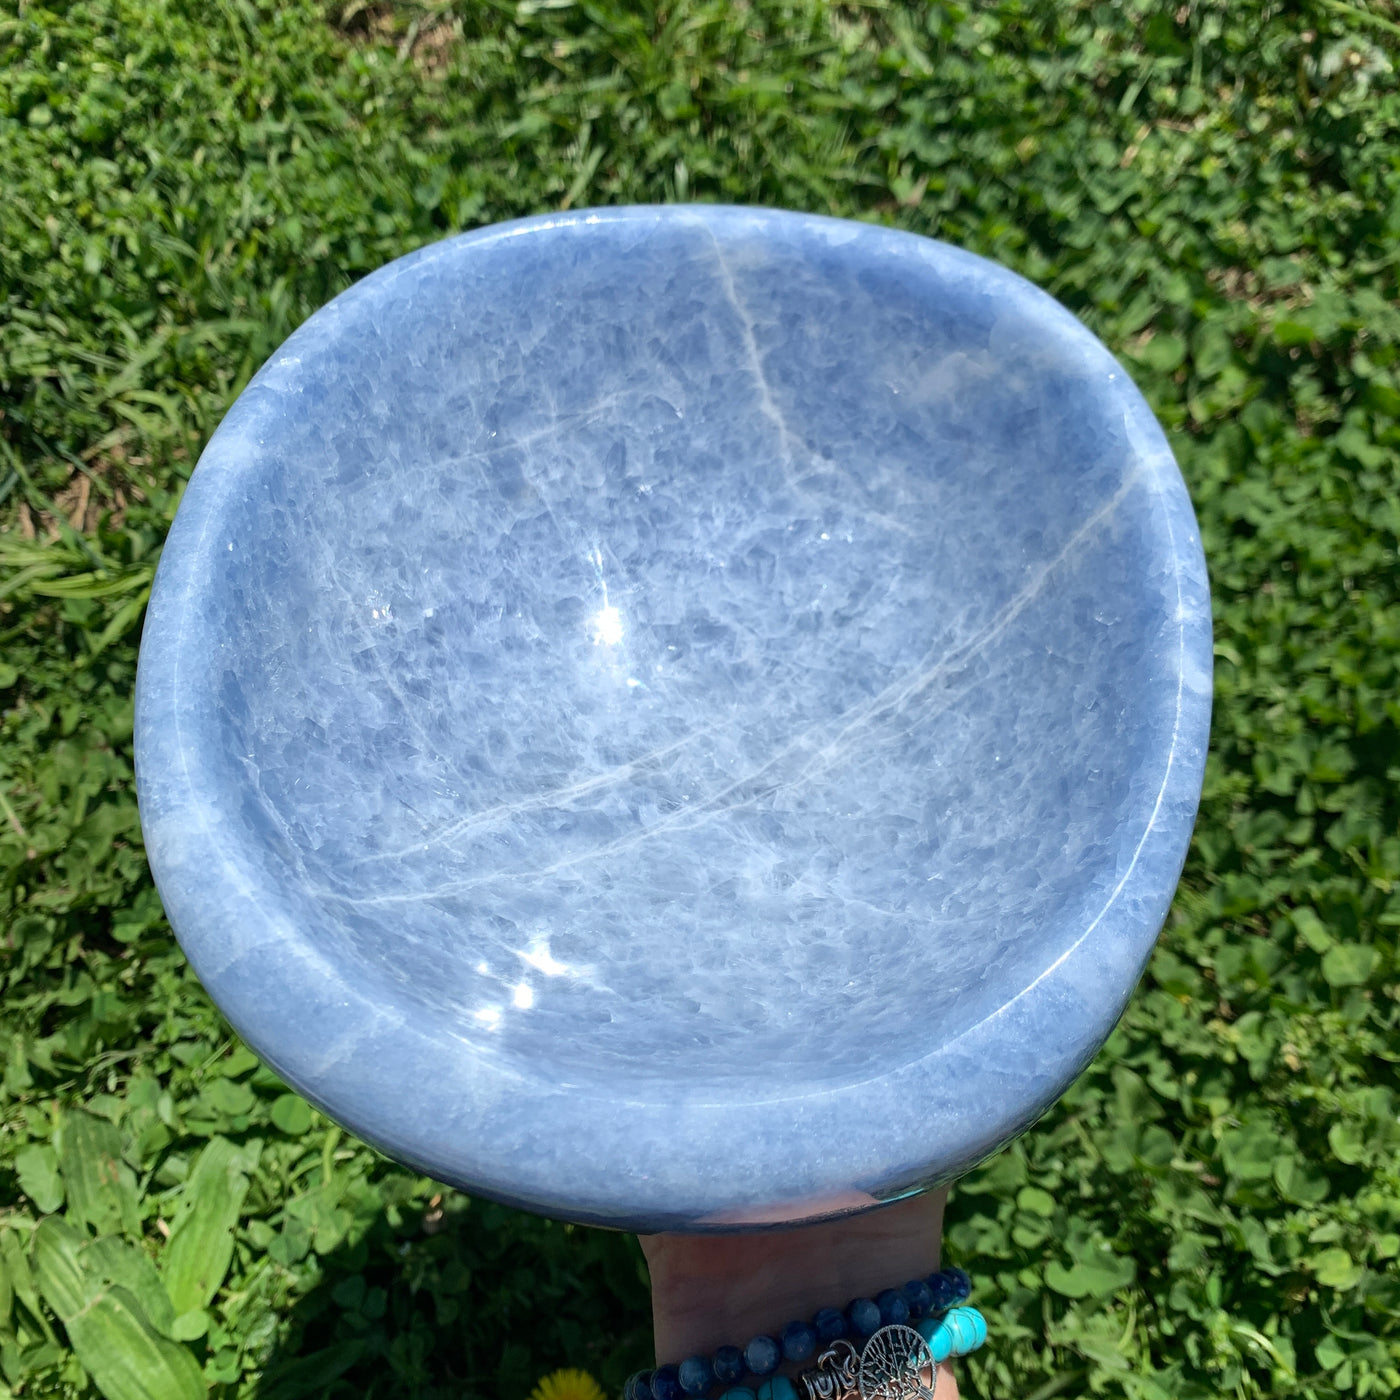 Blue Calcite Bowl